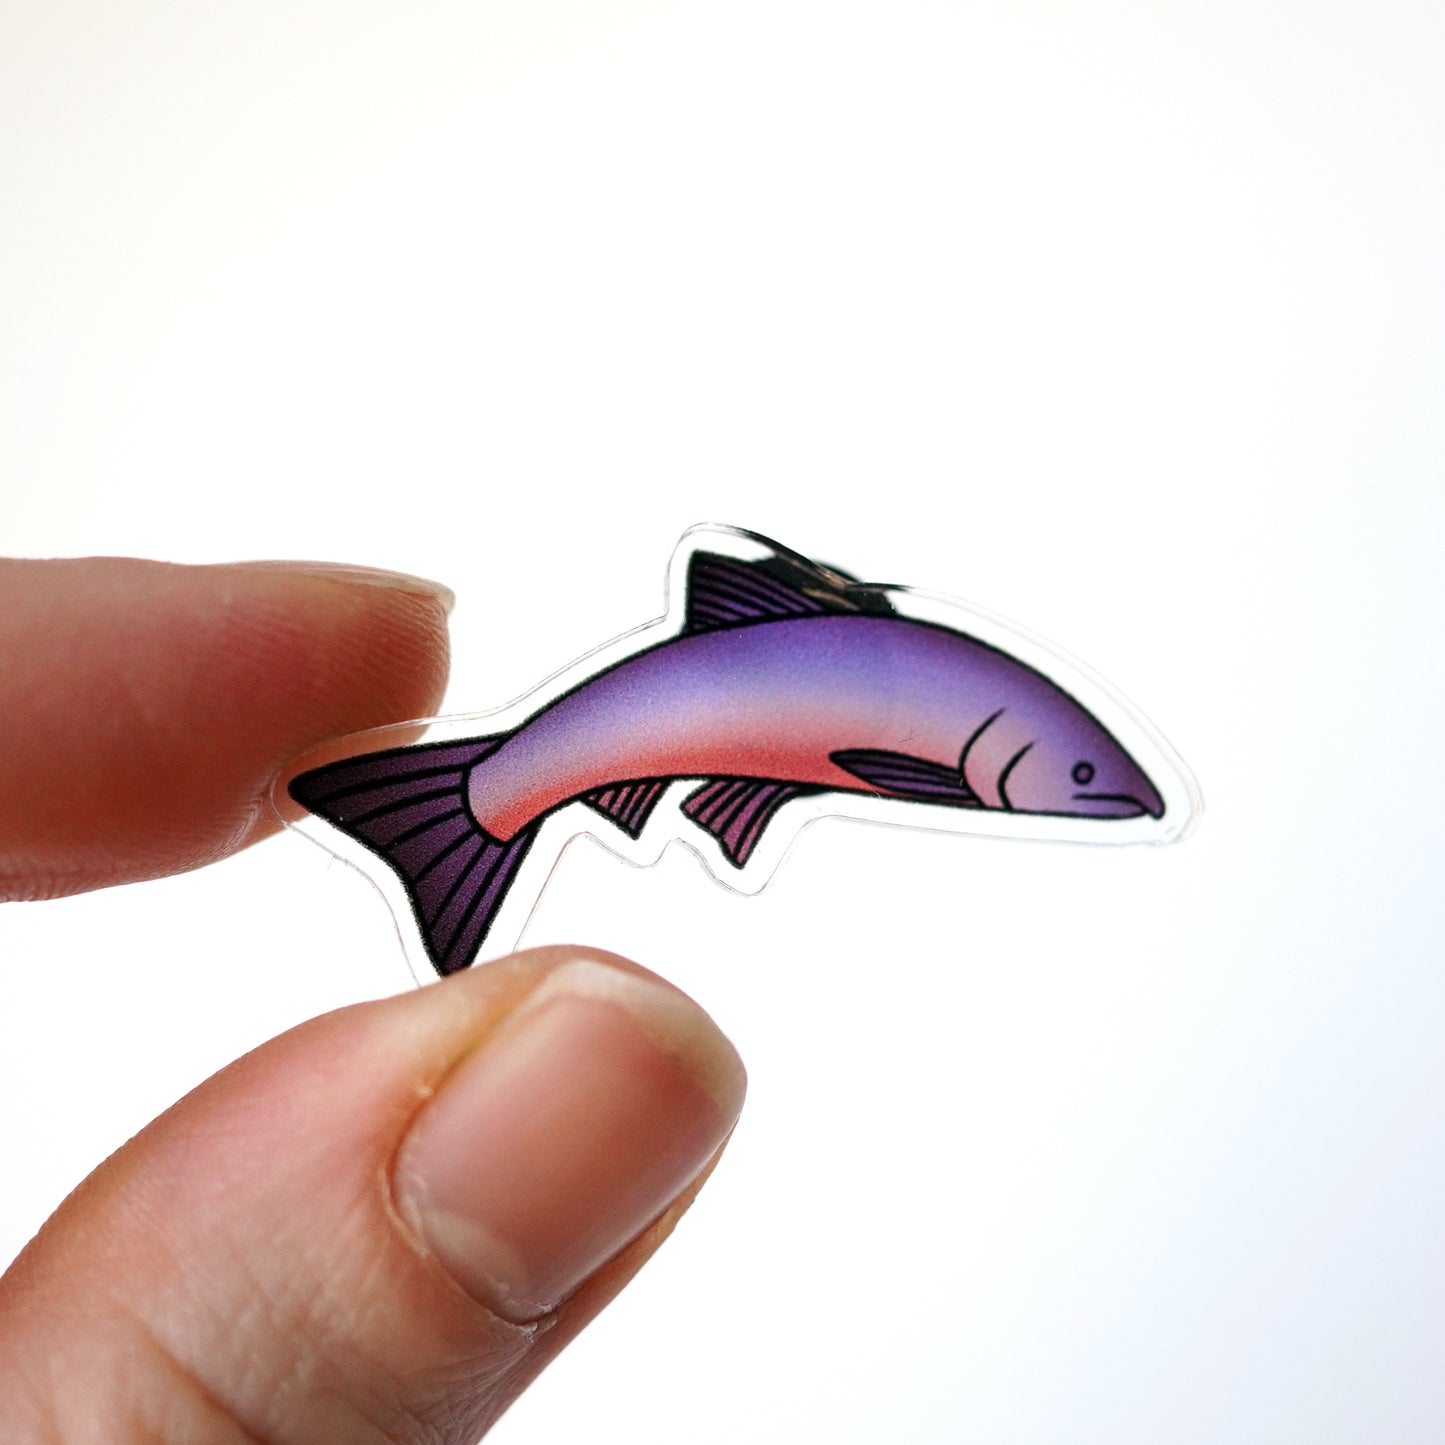 Coho Salmon Eco-Friendly Acrylic Pin